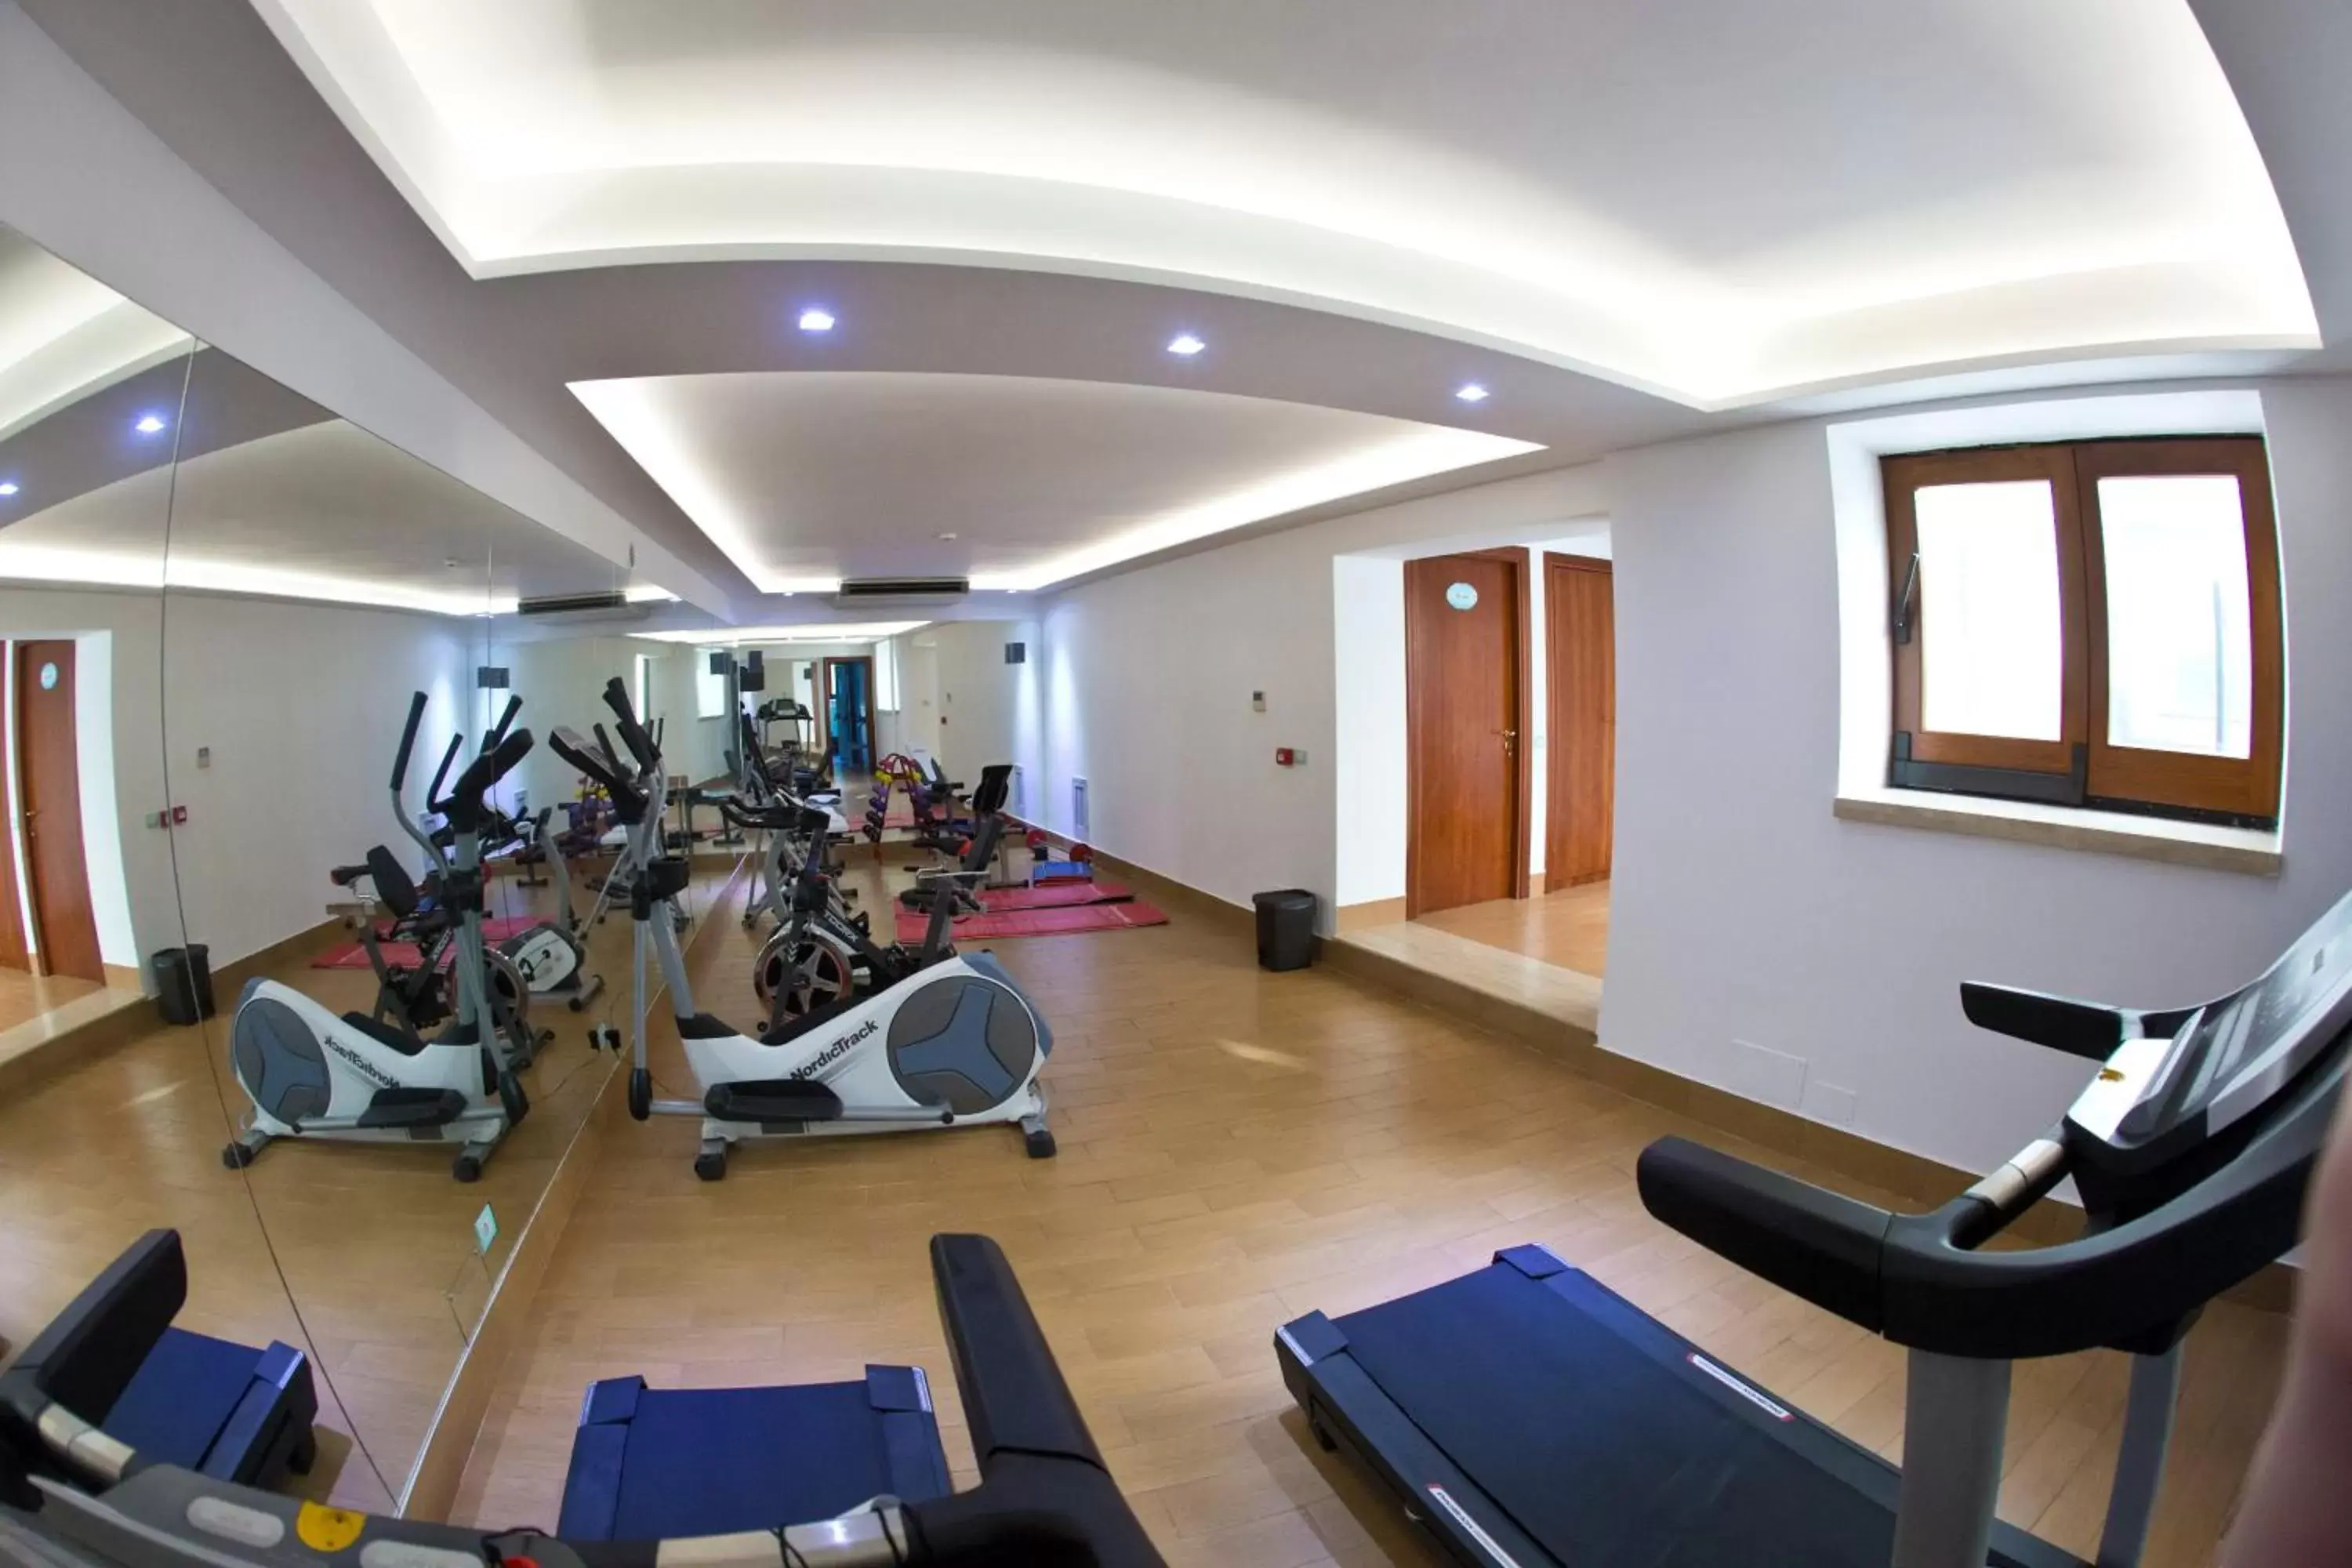 Fitness centre/facilities, Fitness Center/Facilities in Hotel Villa Luisa